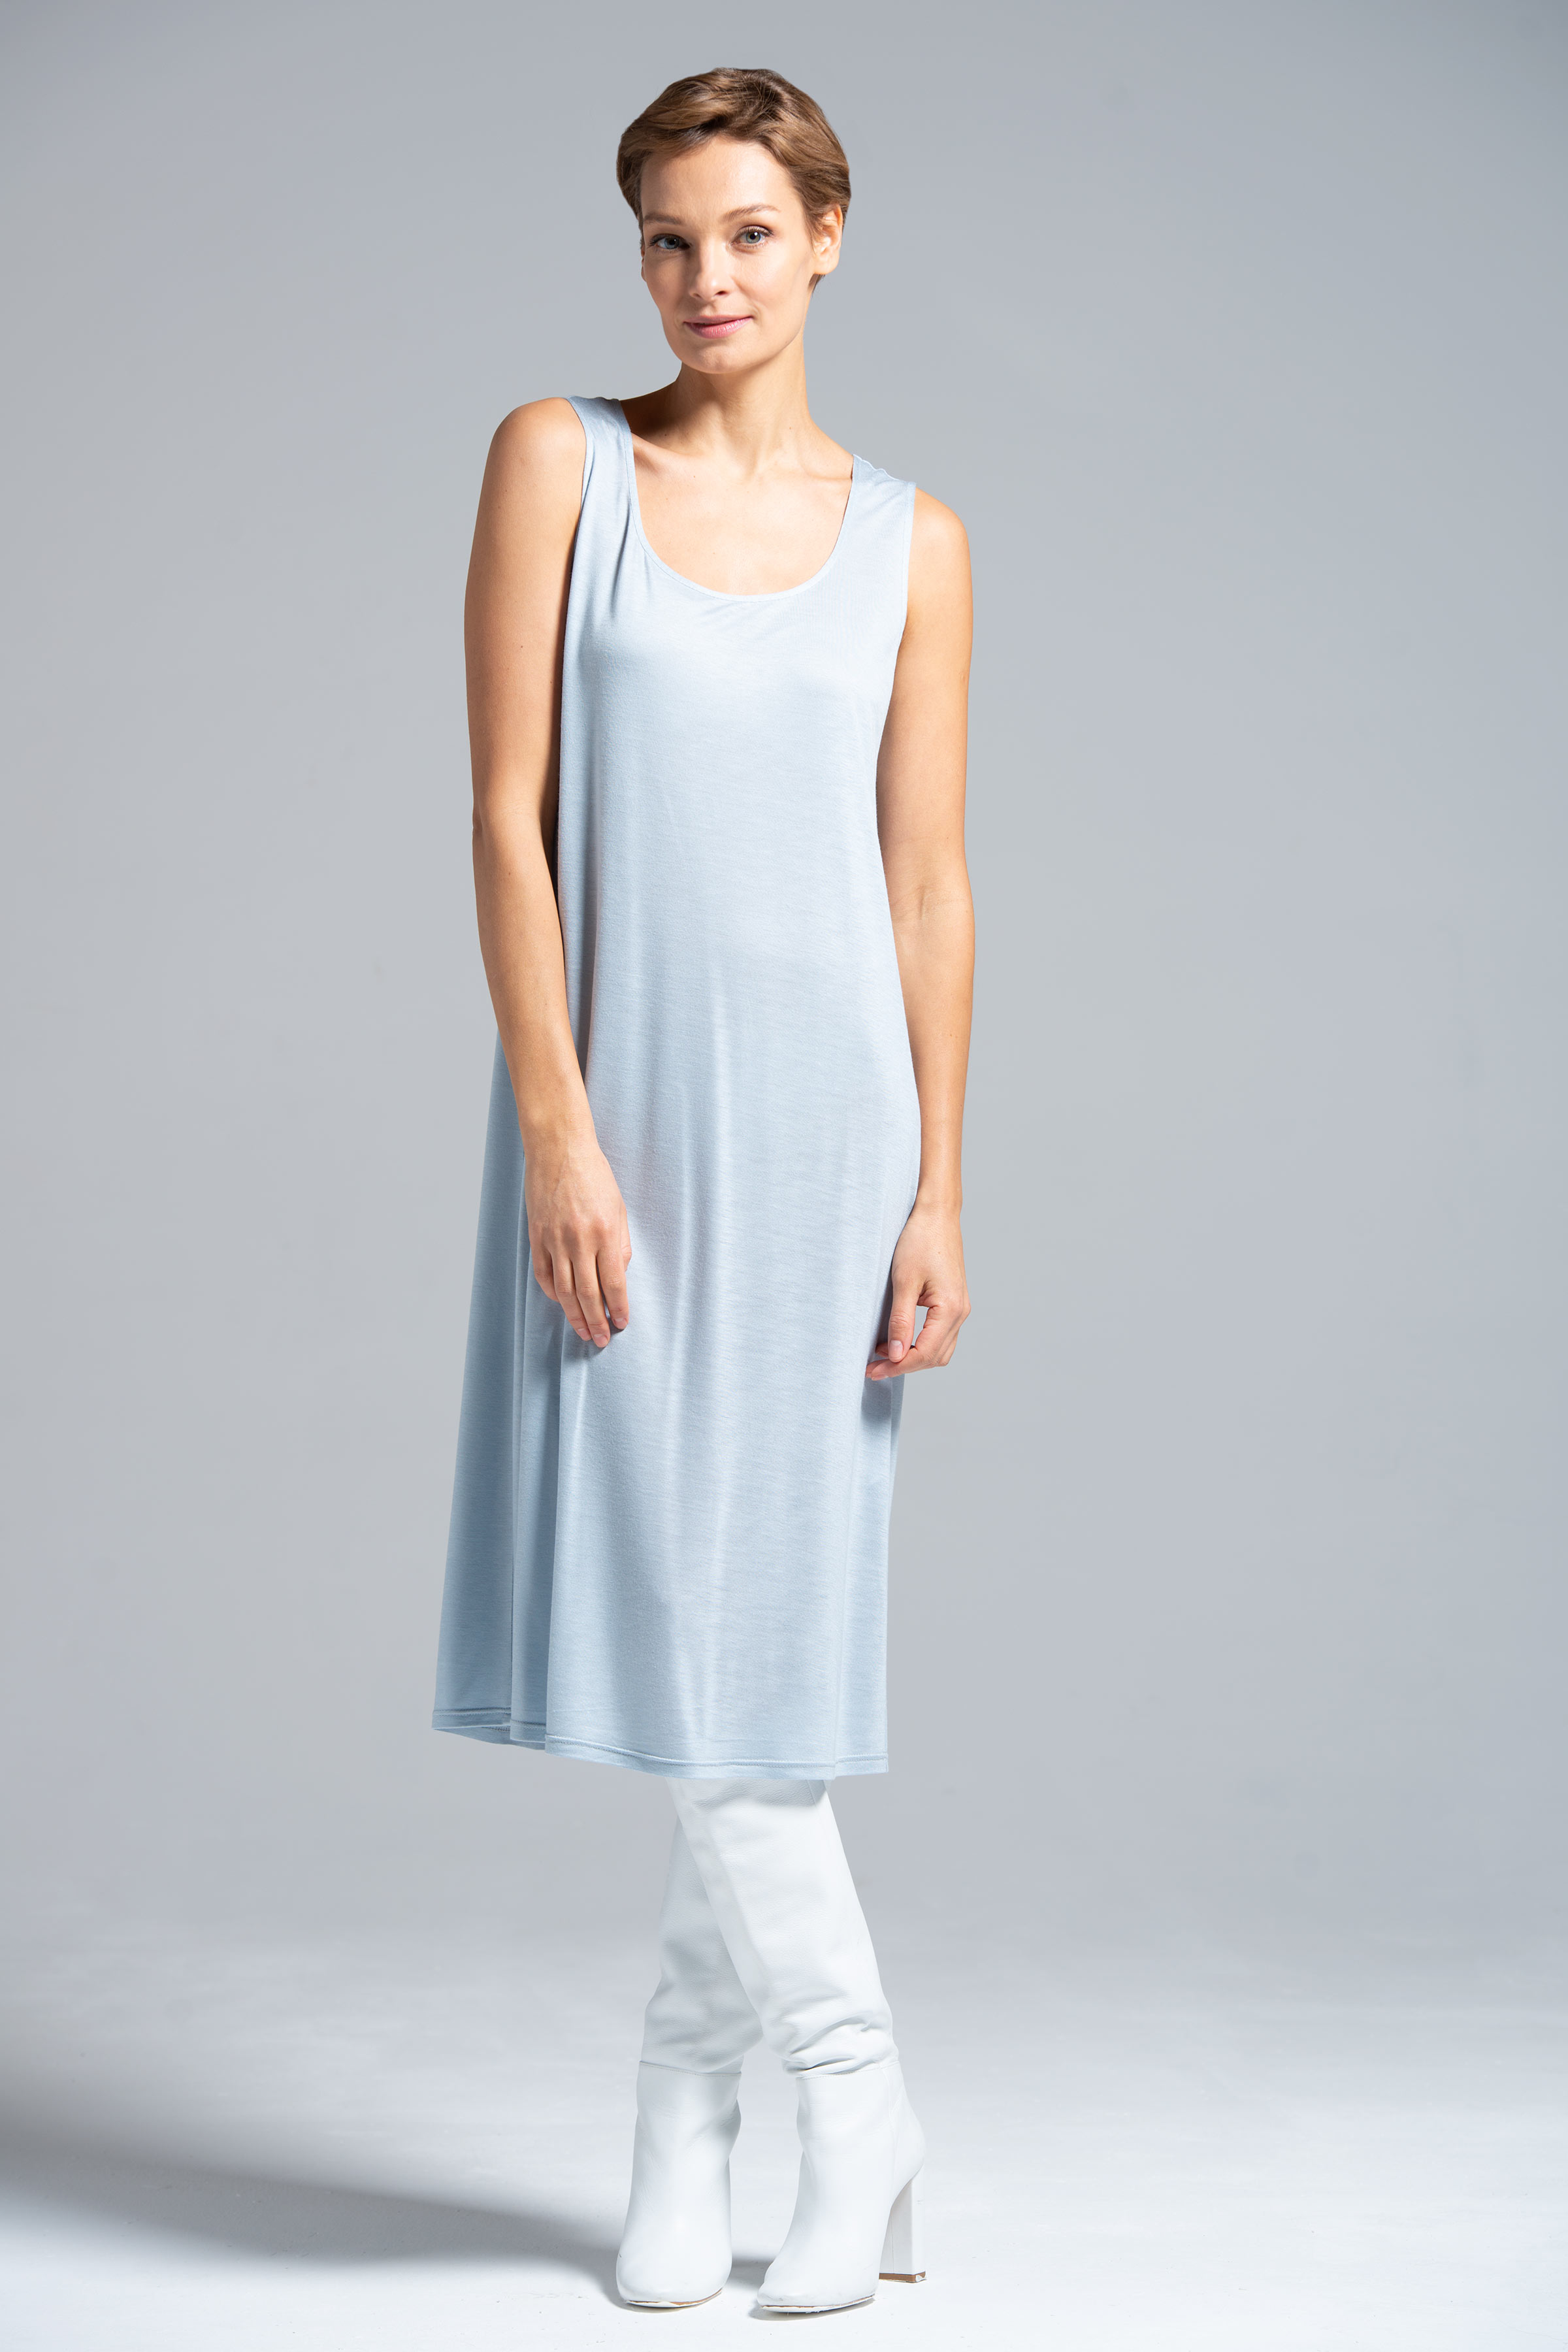 Платье база прямое среднее, без рукавов 39 Светло- джинсовый (denim bleu clair)  от Lesel (Лесель)! Заказывайте по ✆ 8 (800) 777 02 37